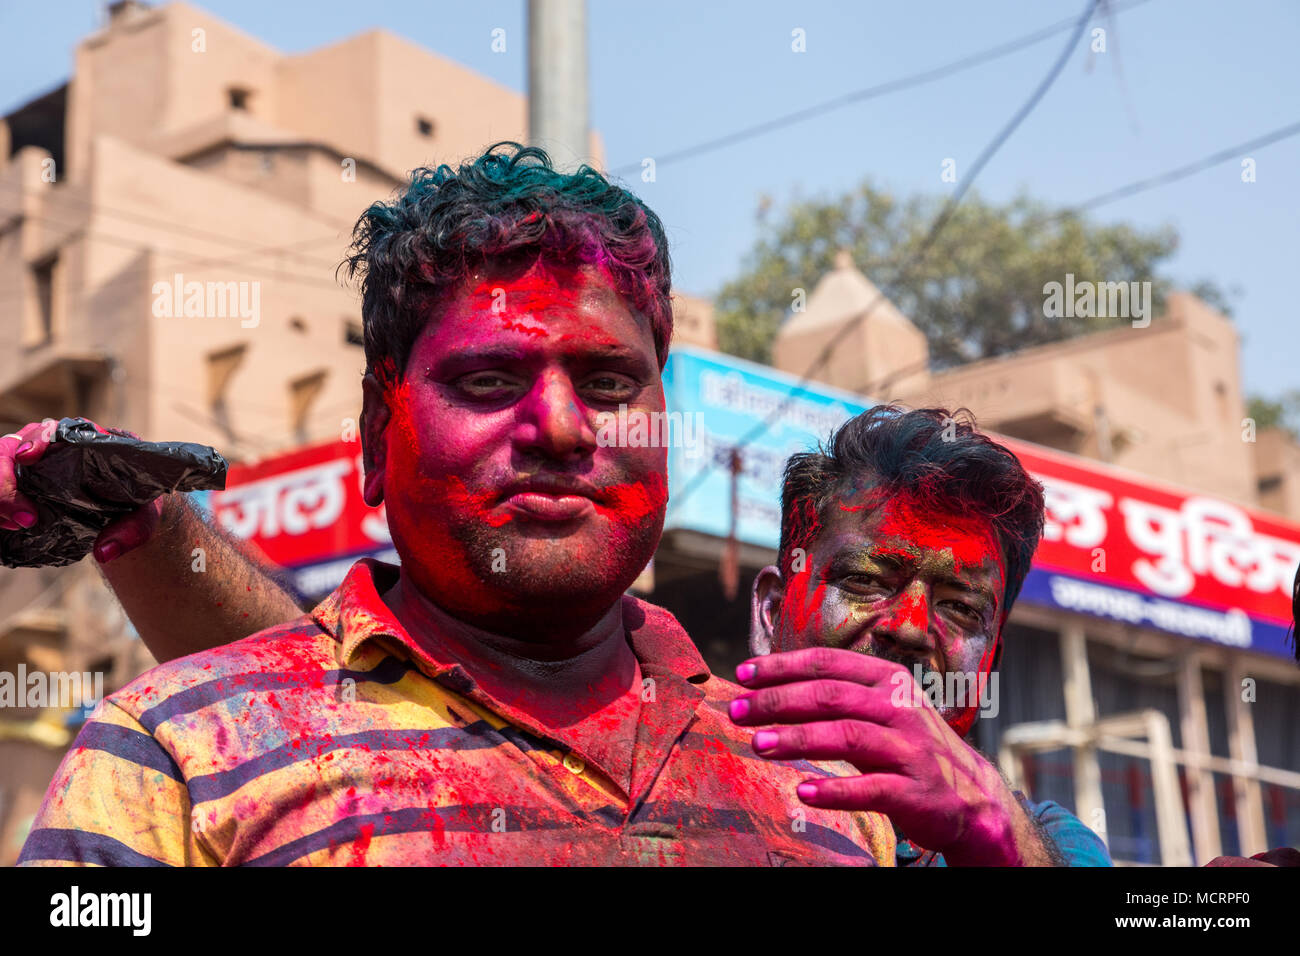 Feiern Holi, ein Hindu festival Frühling und Liebe mit Farben. In Varanasi Uttar Pradesh, Indien fotografierte Stockfoto